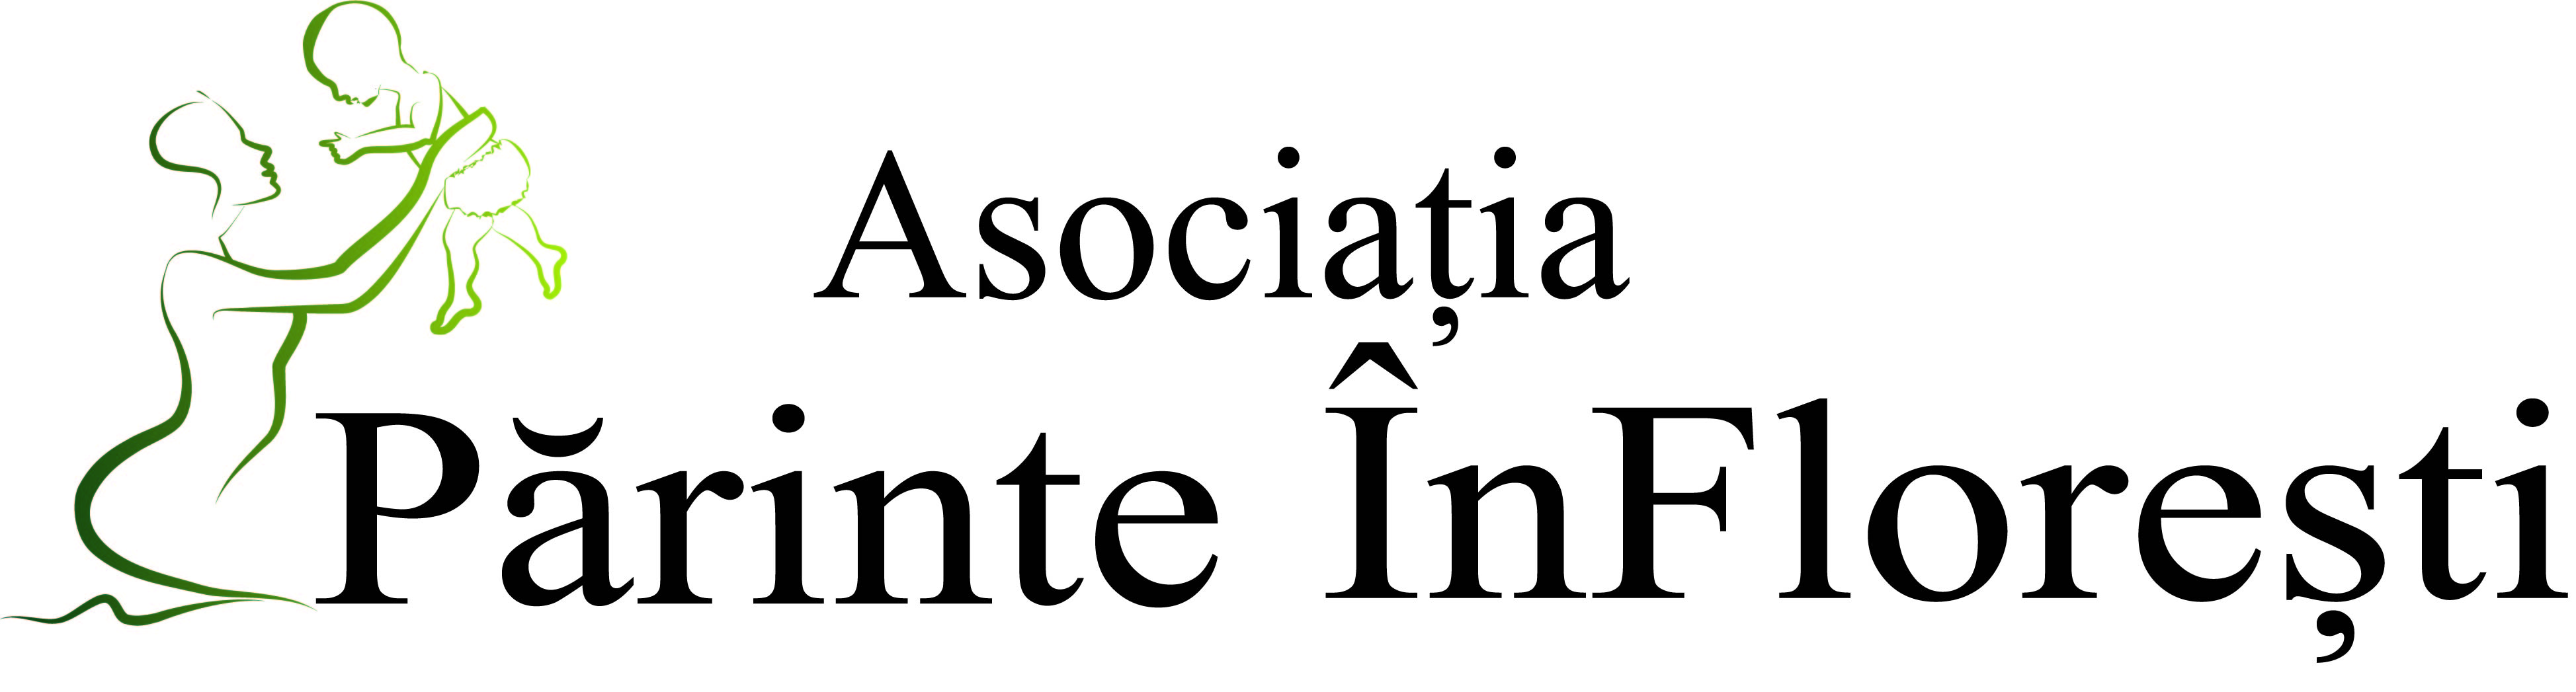 Asociatia Parinte inFloresti logo